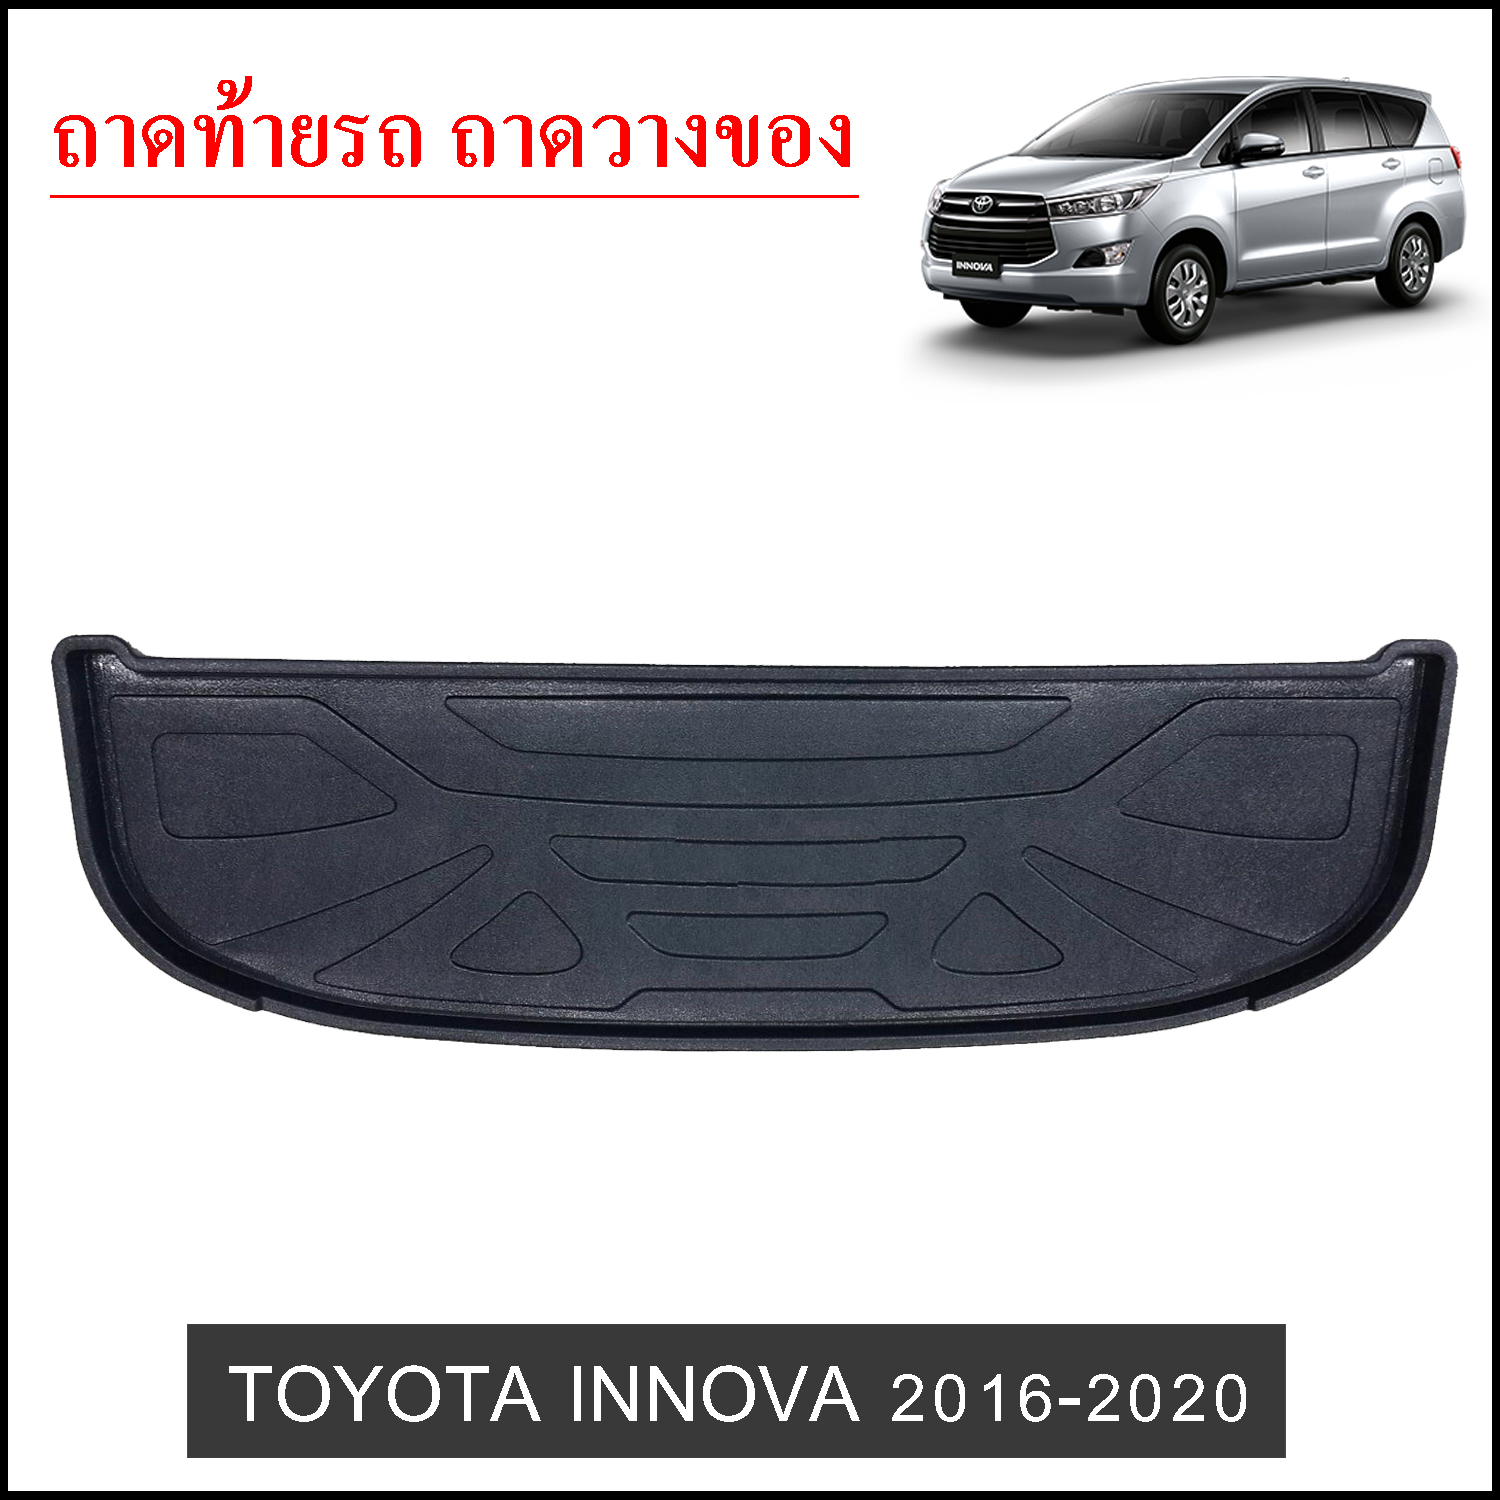 ถาดท้ายวางของ Toyota Innova 2016-2020